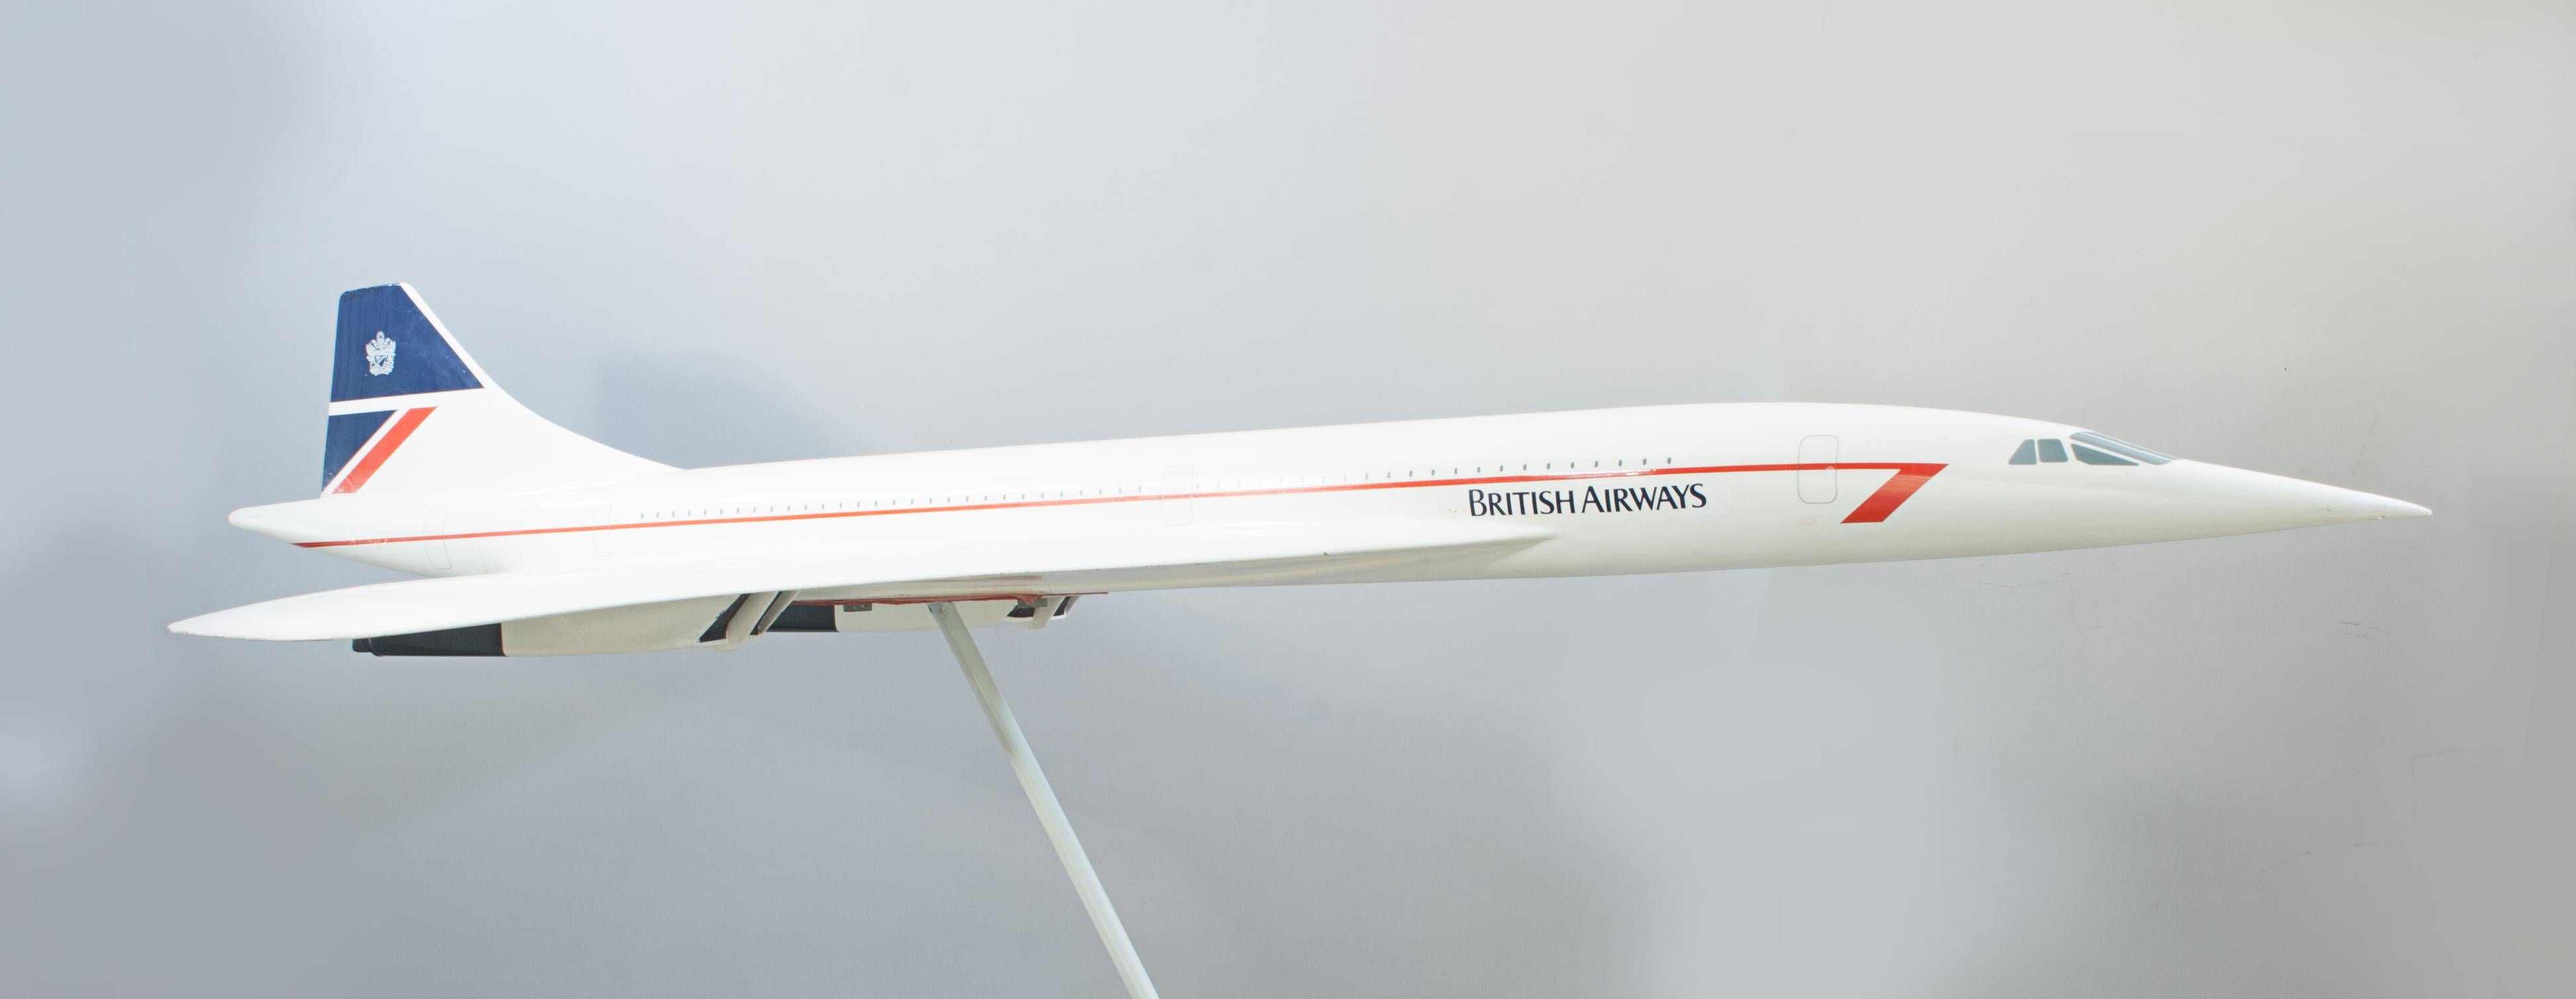 Britannique Concord, maquette d'avion de British Airways en vente